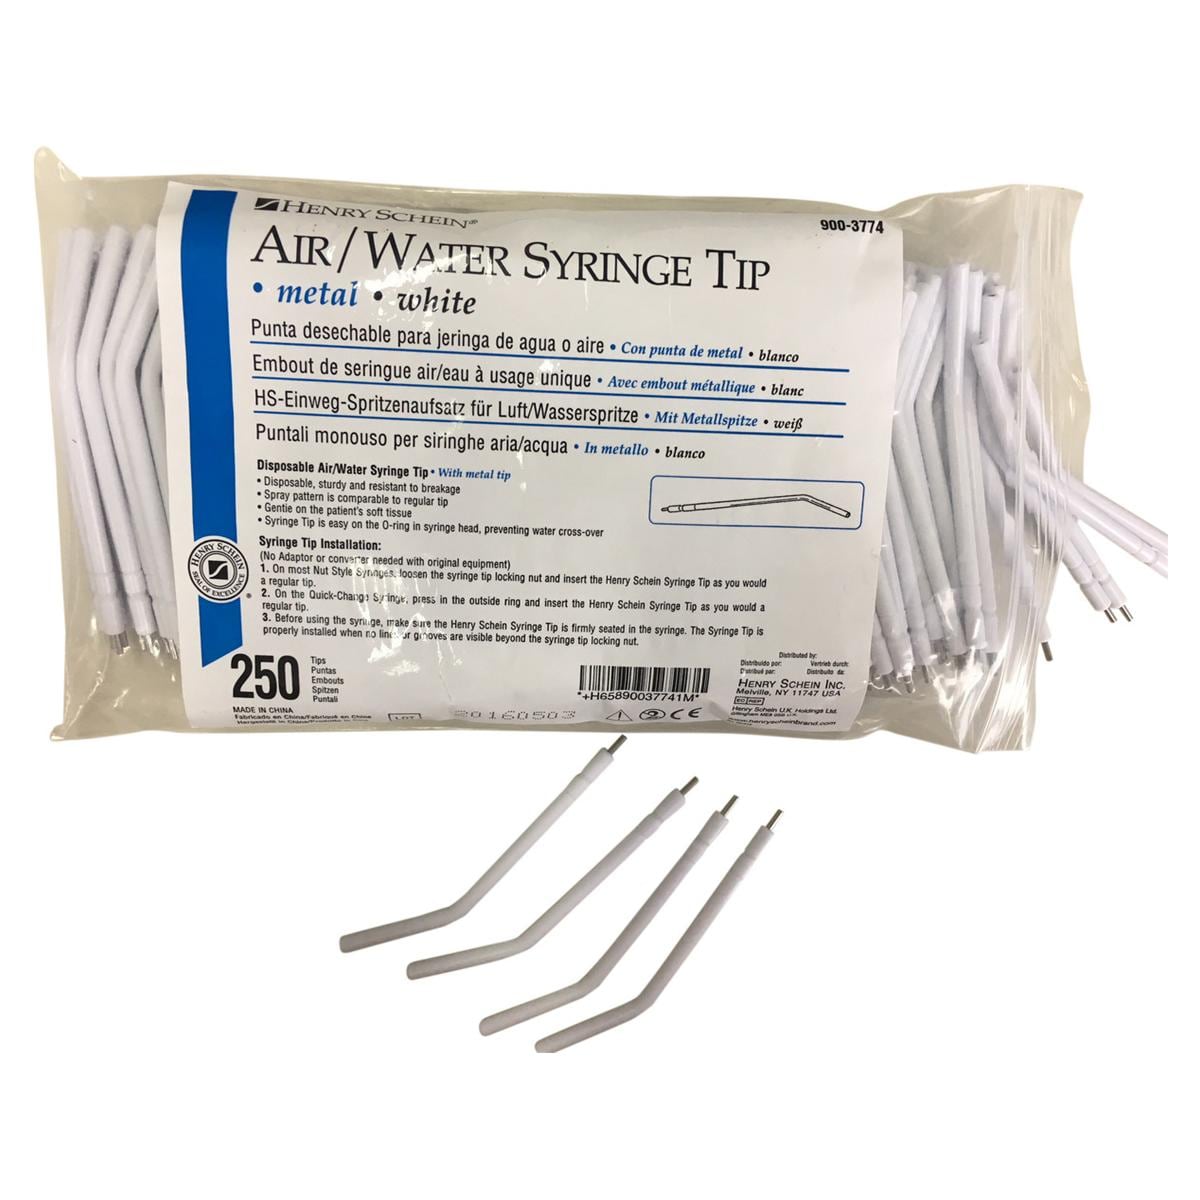 Air/Water Syringe Tips Metal - Verpakking, 250 stuks